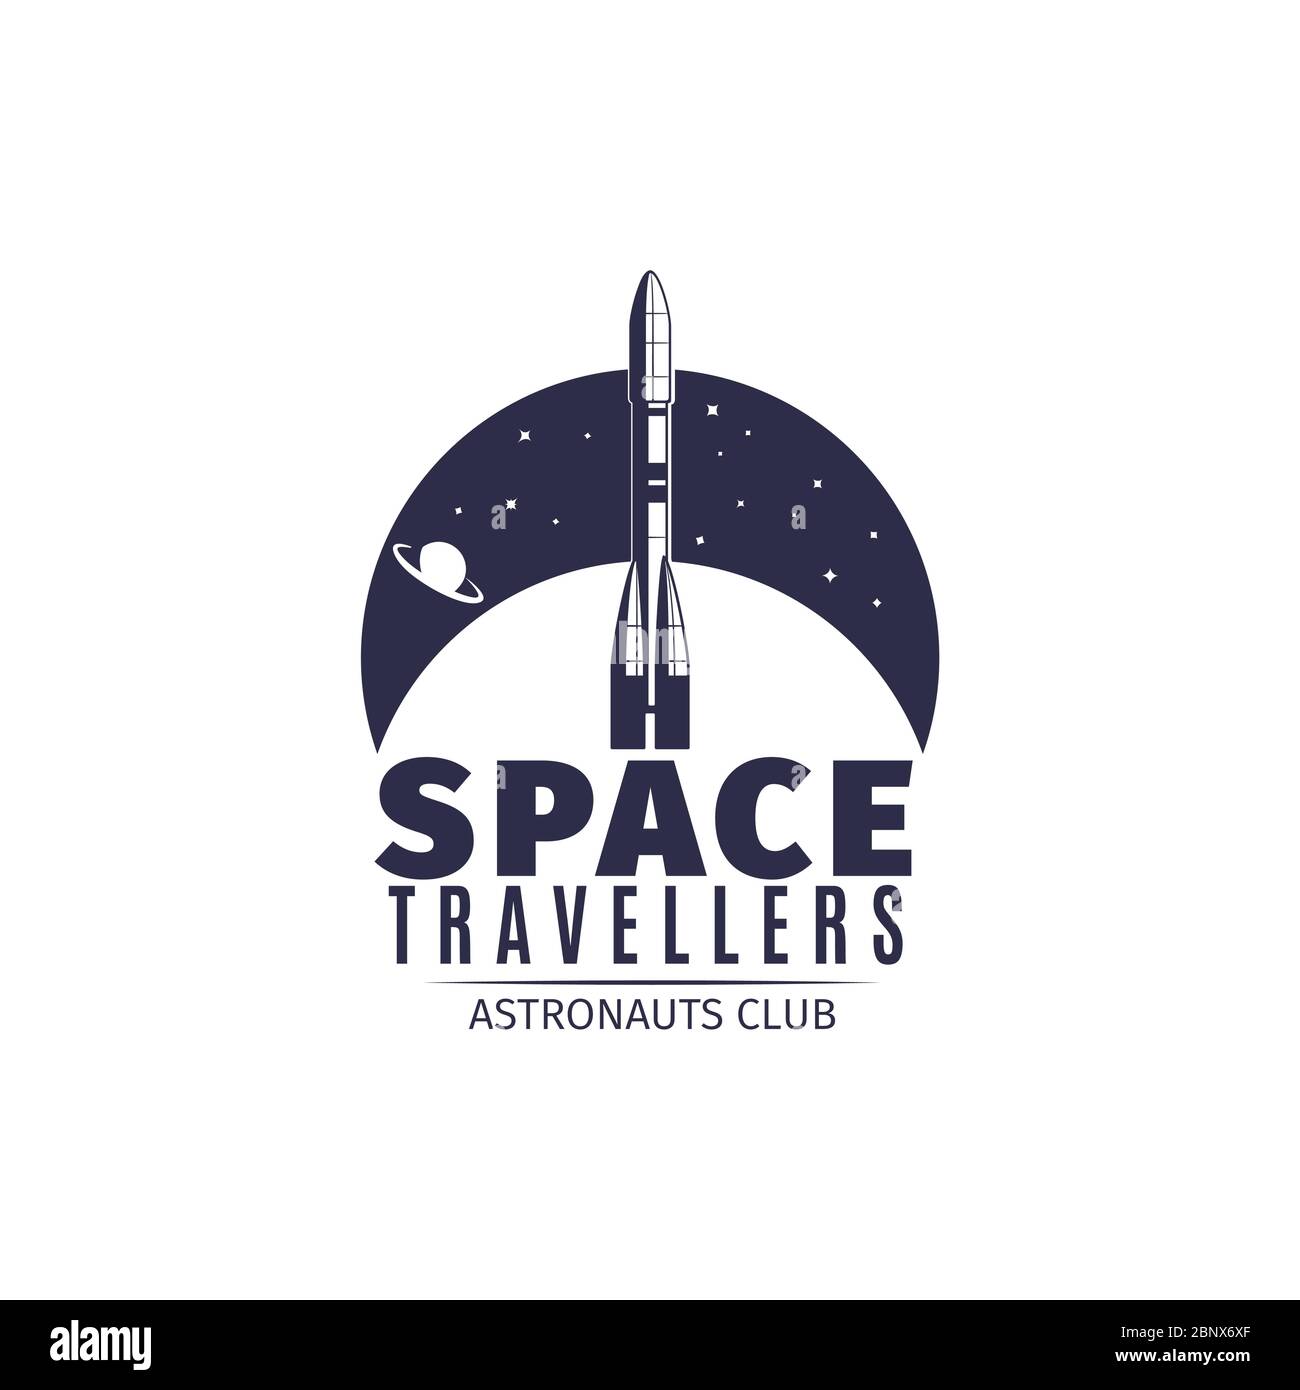 Viaggiatori spaziali. Logo del club astronauta in stile retrò. Etichetta astronautica vintage con illustrazione vettoriale a razzo spaziale Illustrazione Vettoriale